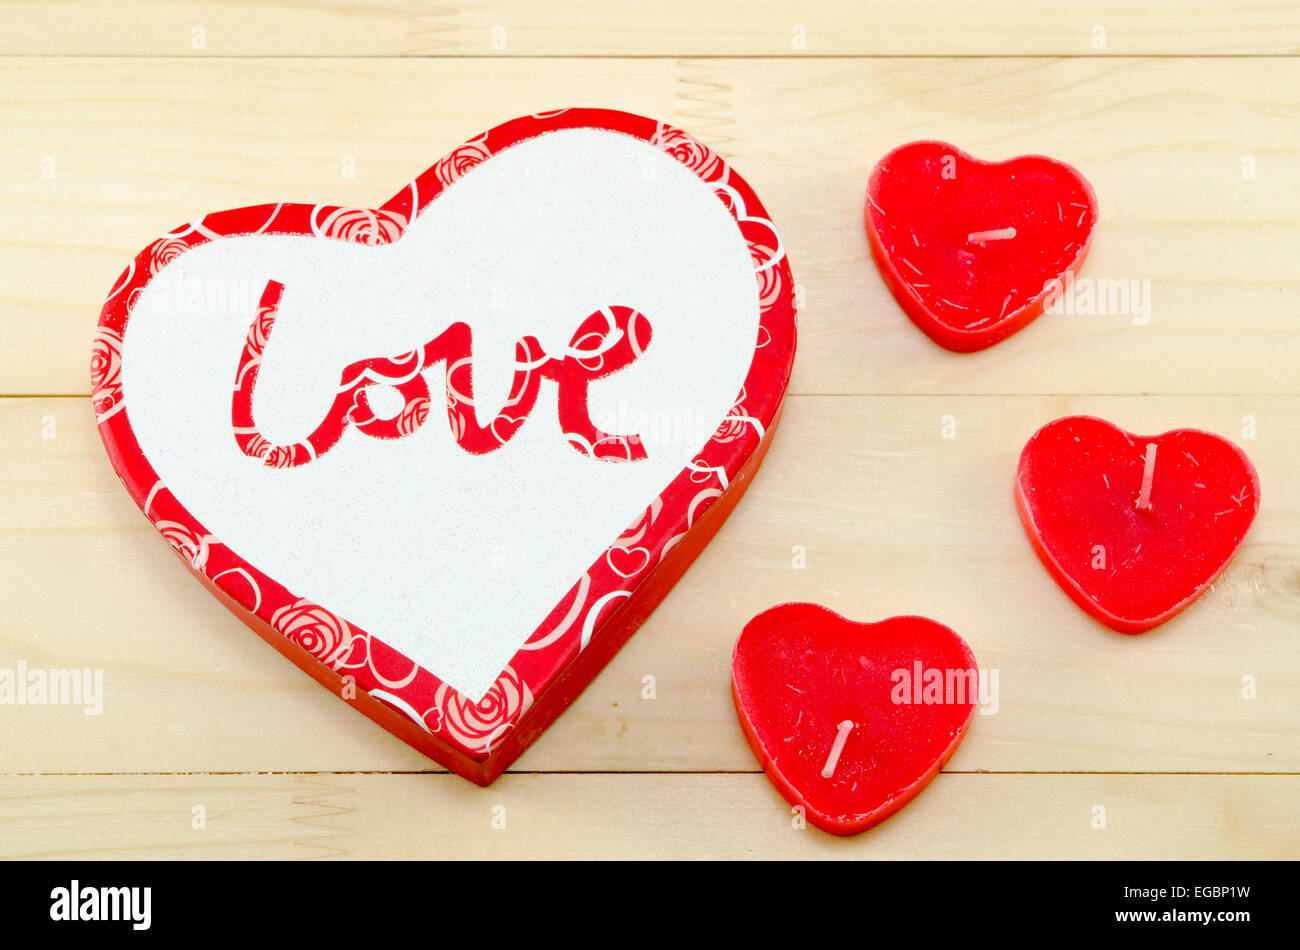 Herzförmige rote Kerzen und eine Schachtel mit dem Wort "Liebe" geschrieben, auf einem hölzernen Hintergrund Stockfoto